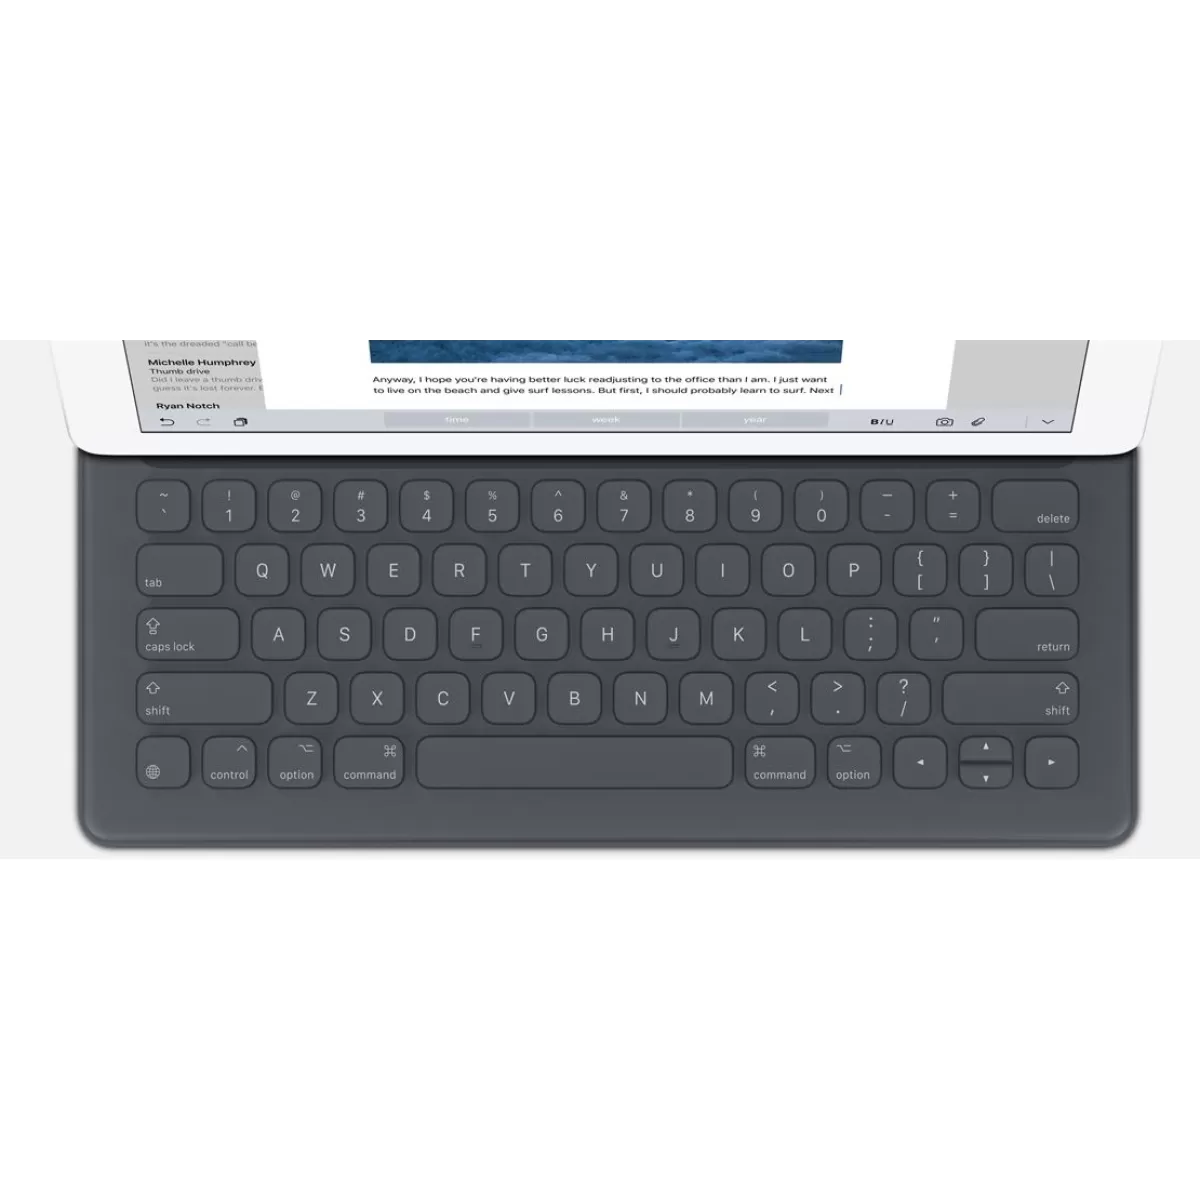 Клавиатура Smart Keyboard for Apple iPad Pro 12.9 US English